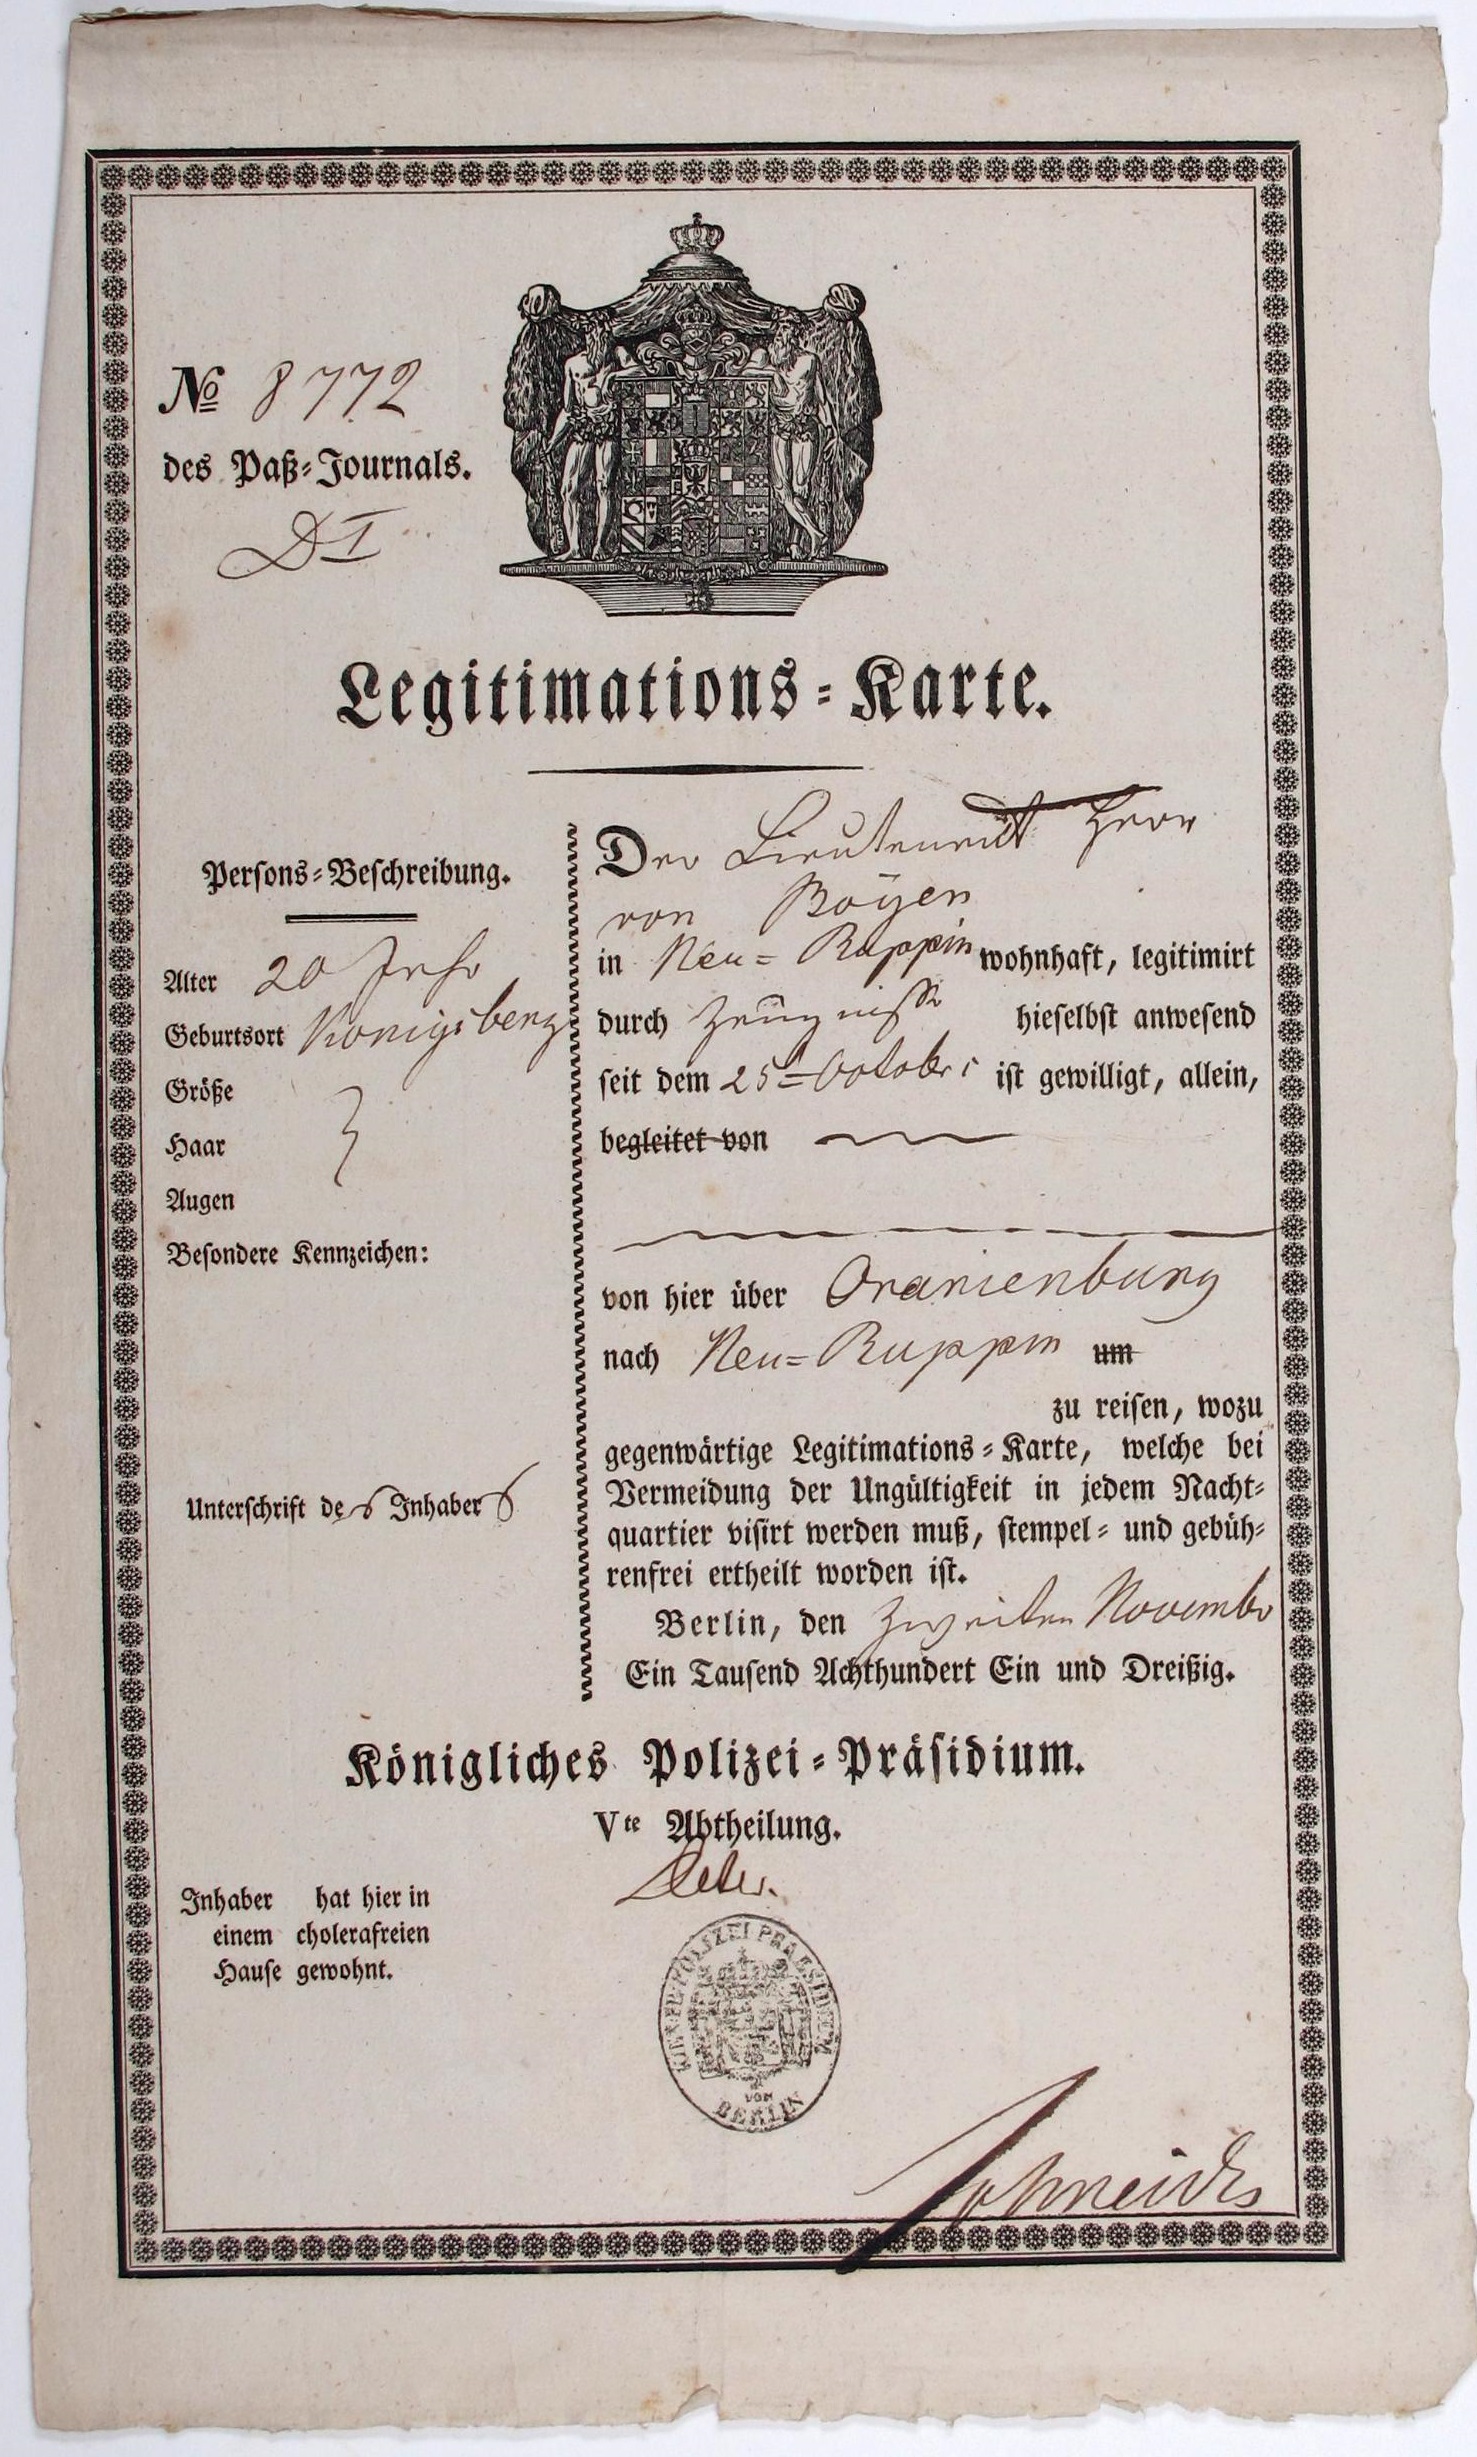 Preußische Legitimationskarte für Lieutnant von Boyen über Wohnung in einem cholerafreien Haus und Reiseerlaubnis von Berlin über Oranienburg nach Neu-Ruppin, 02. November 1831